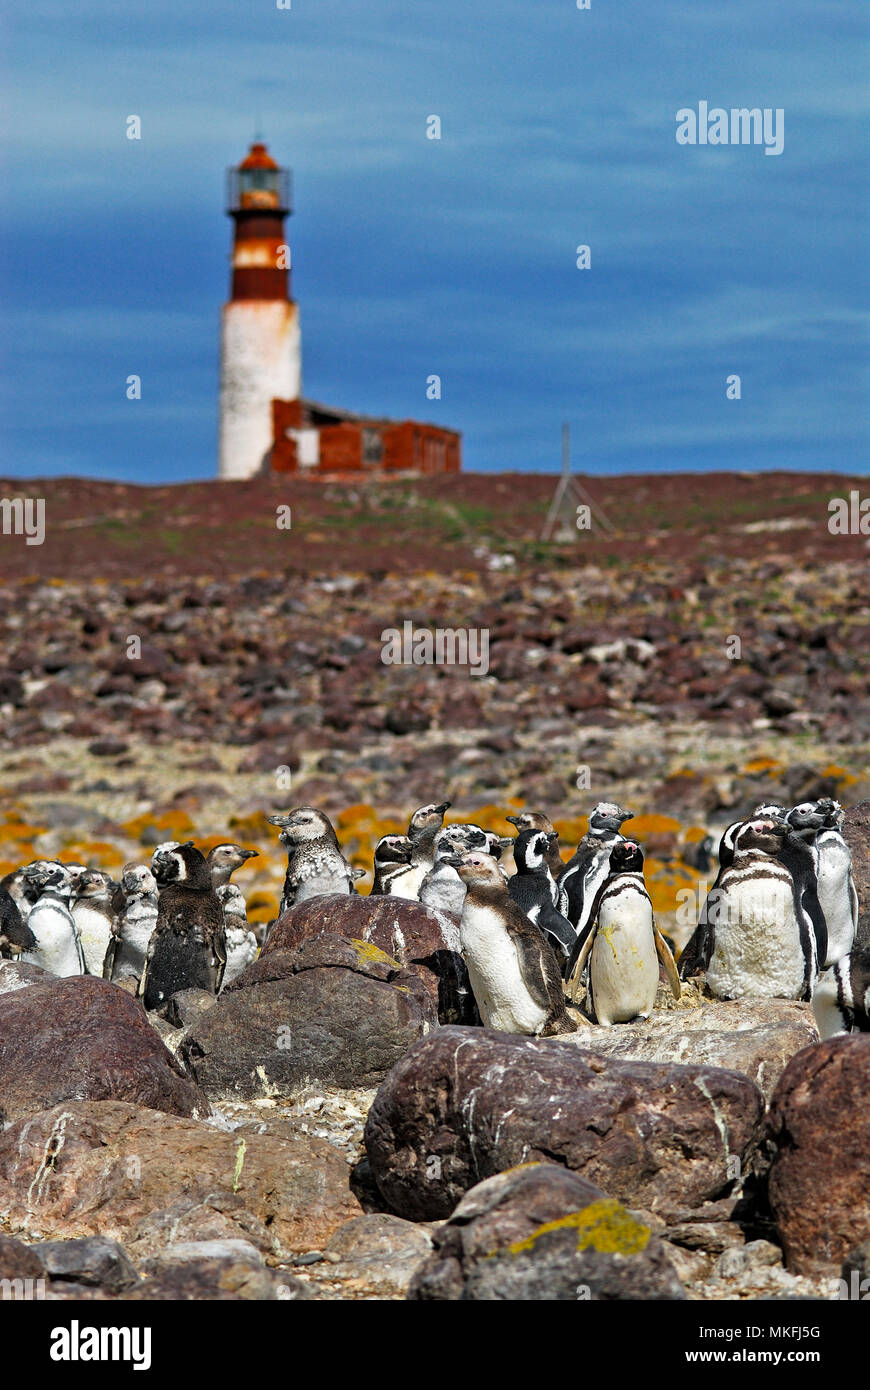 Magellanic penguin (Spheniscus magellanicus). National Park Penguin Island. Puerto Deseado, Argentina. Stock Photo